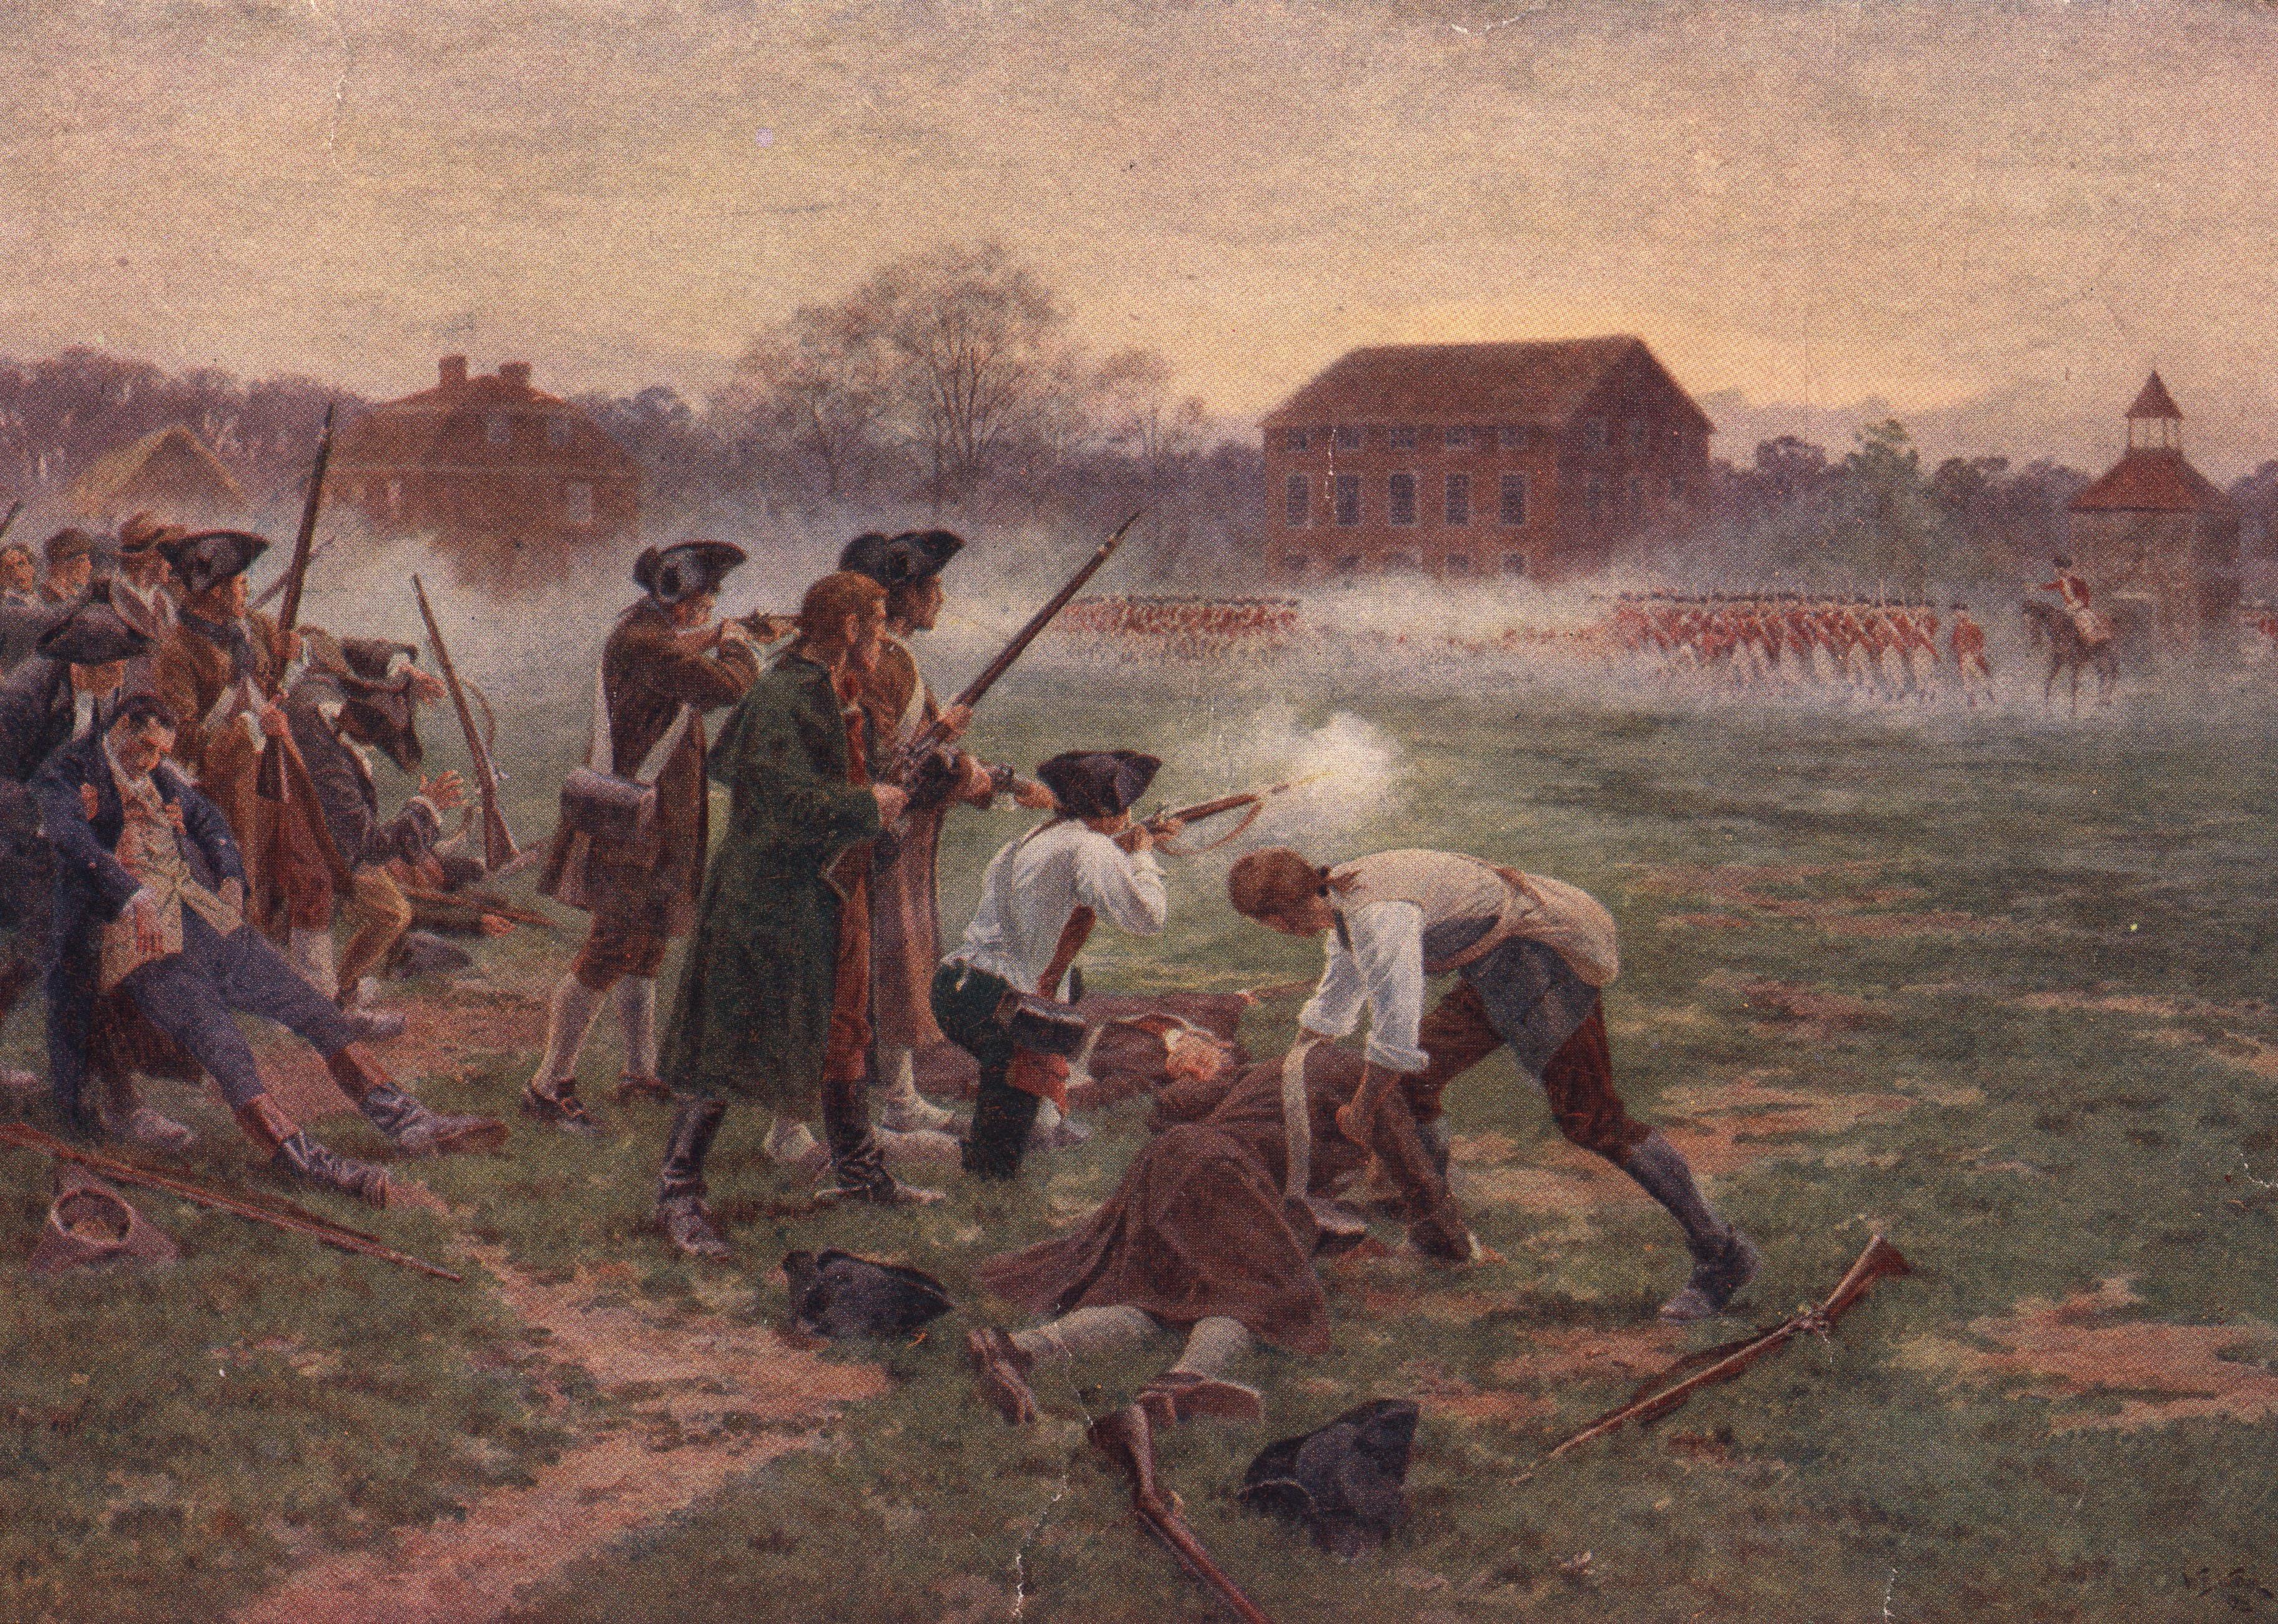 Minutemen facing British soldiers on Lexington Common, Massachusetts.